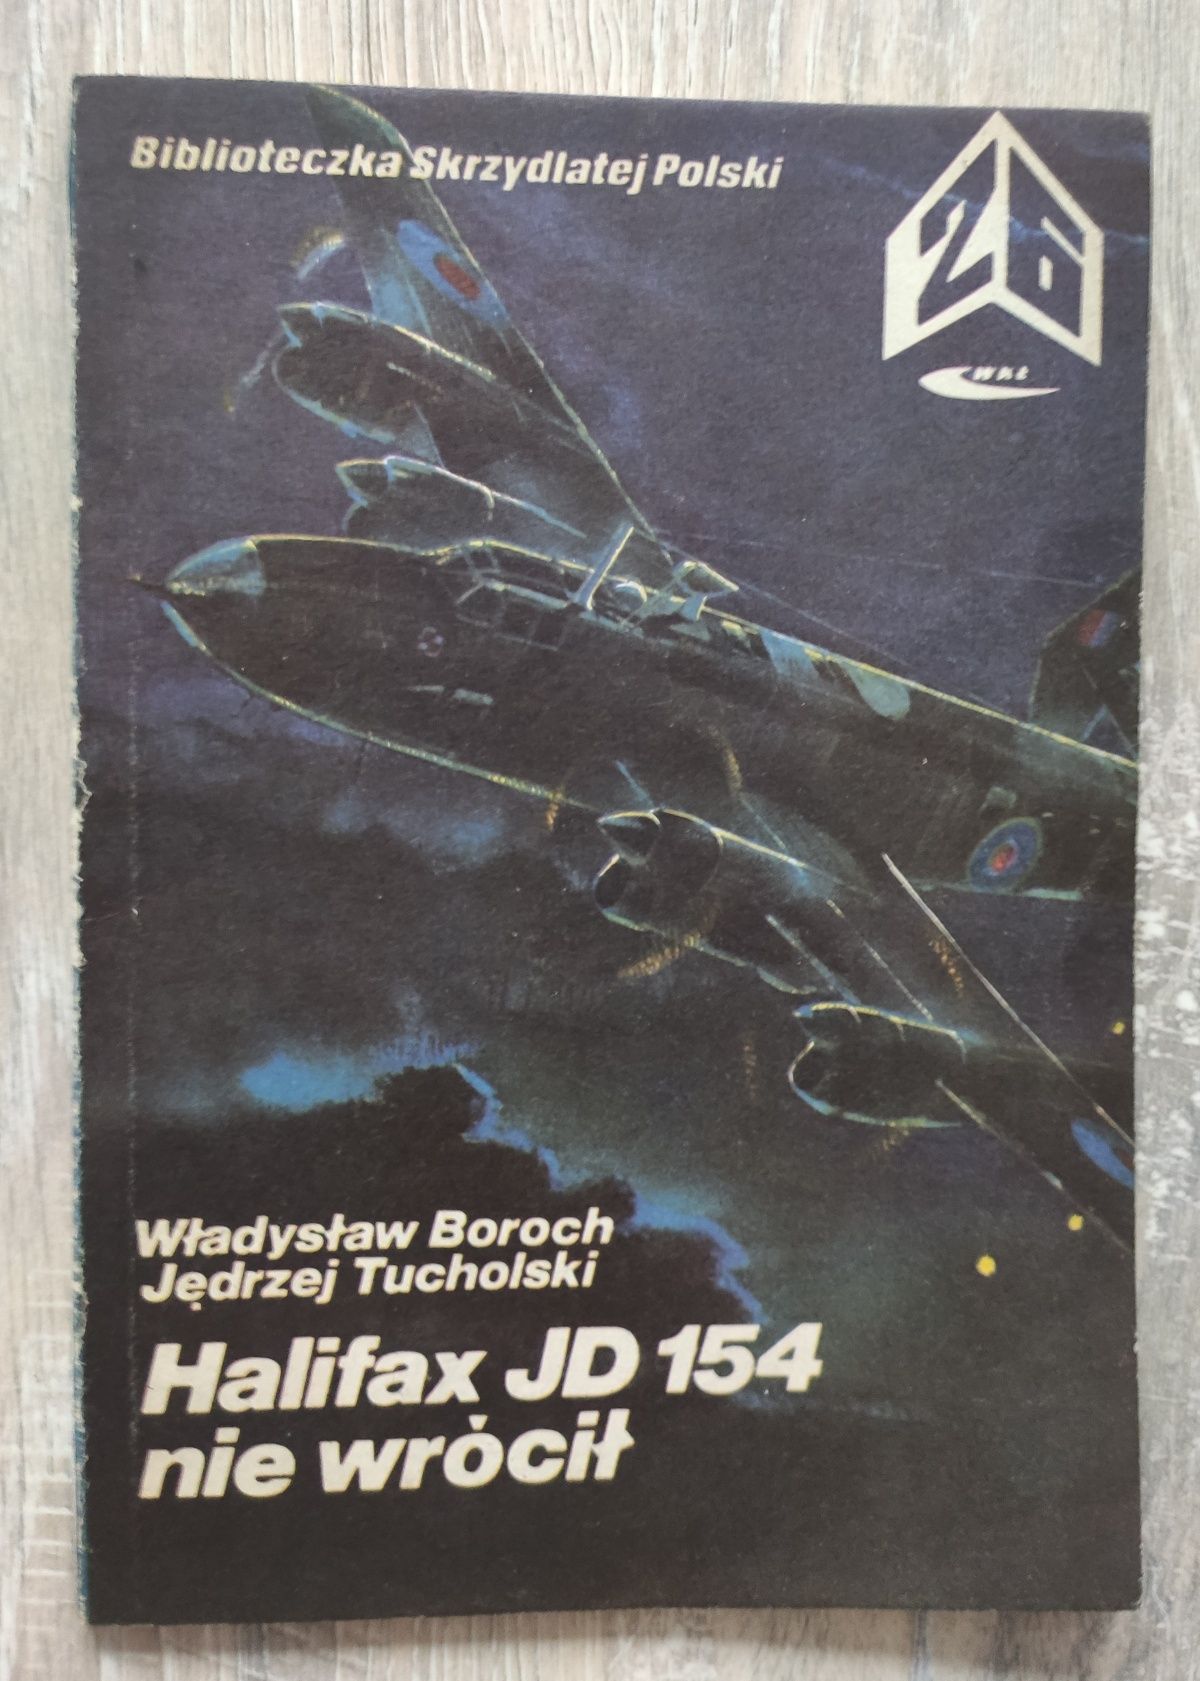 Halifax JD 154 nie wrócił Boroch, Tucholski